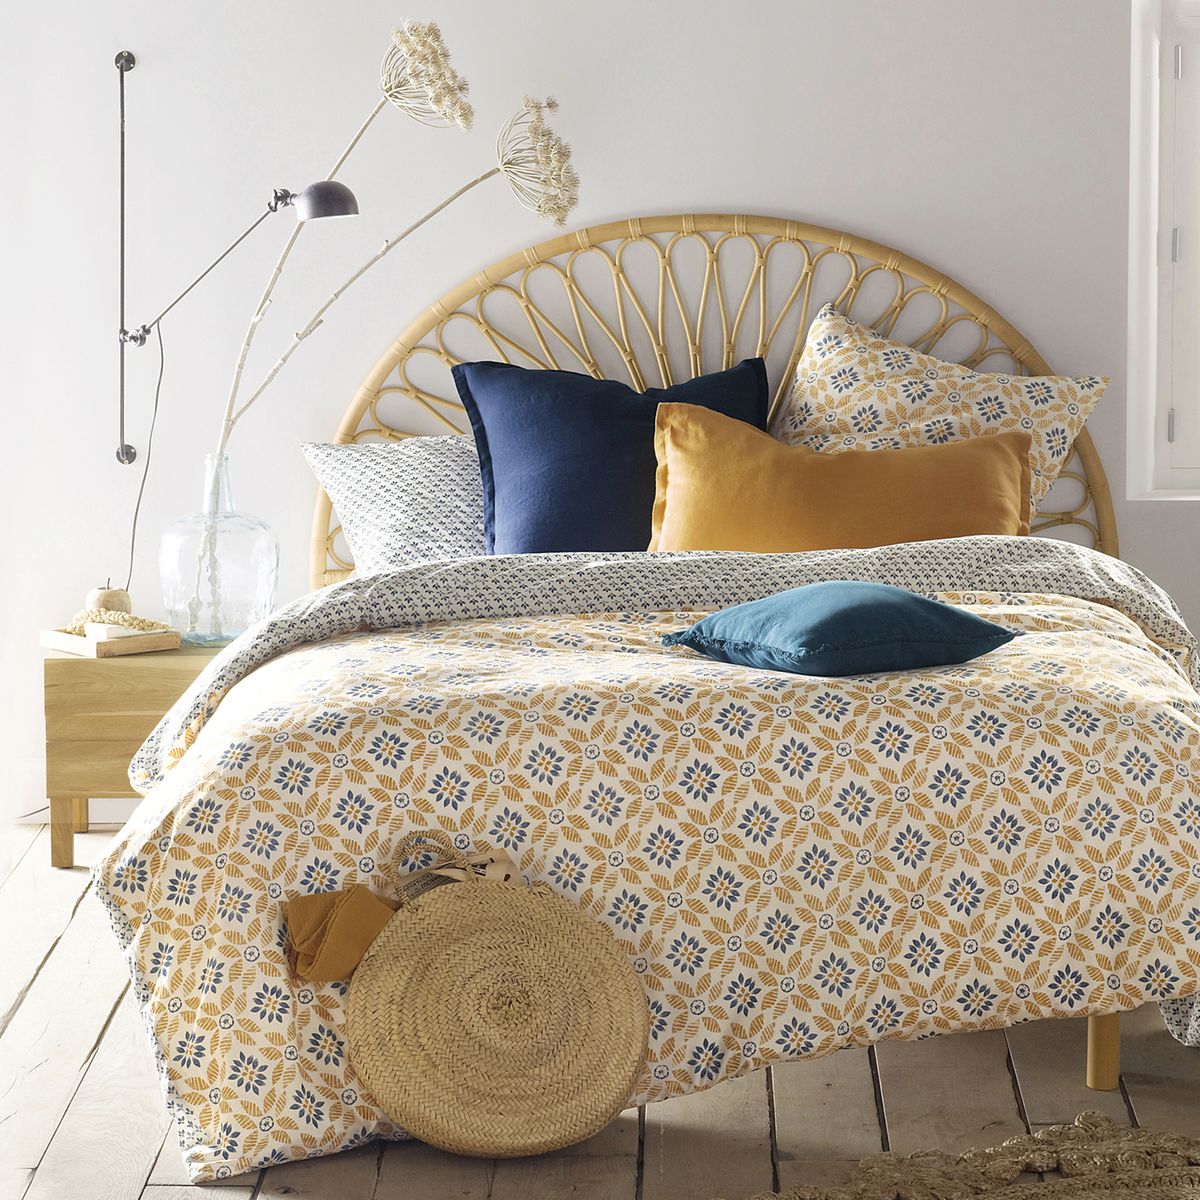 panier de rangement chambre style campagne lumineuse nuance jaune marron bleu parquet bois rustique - blog déco - clem around the corner